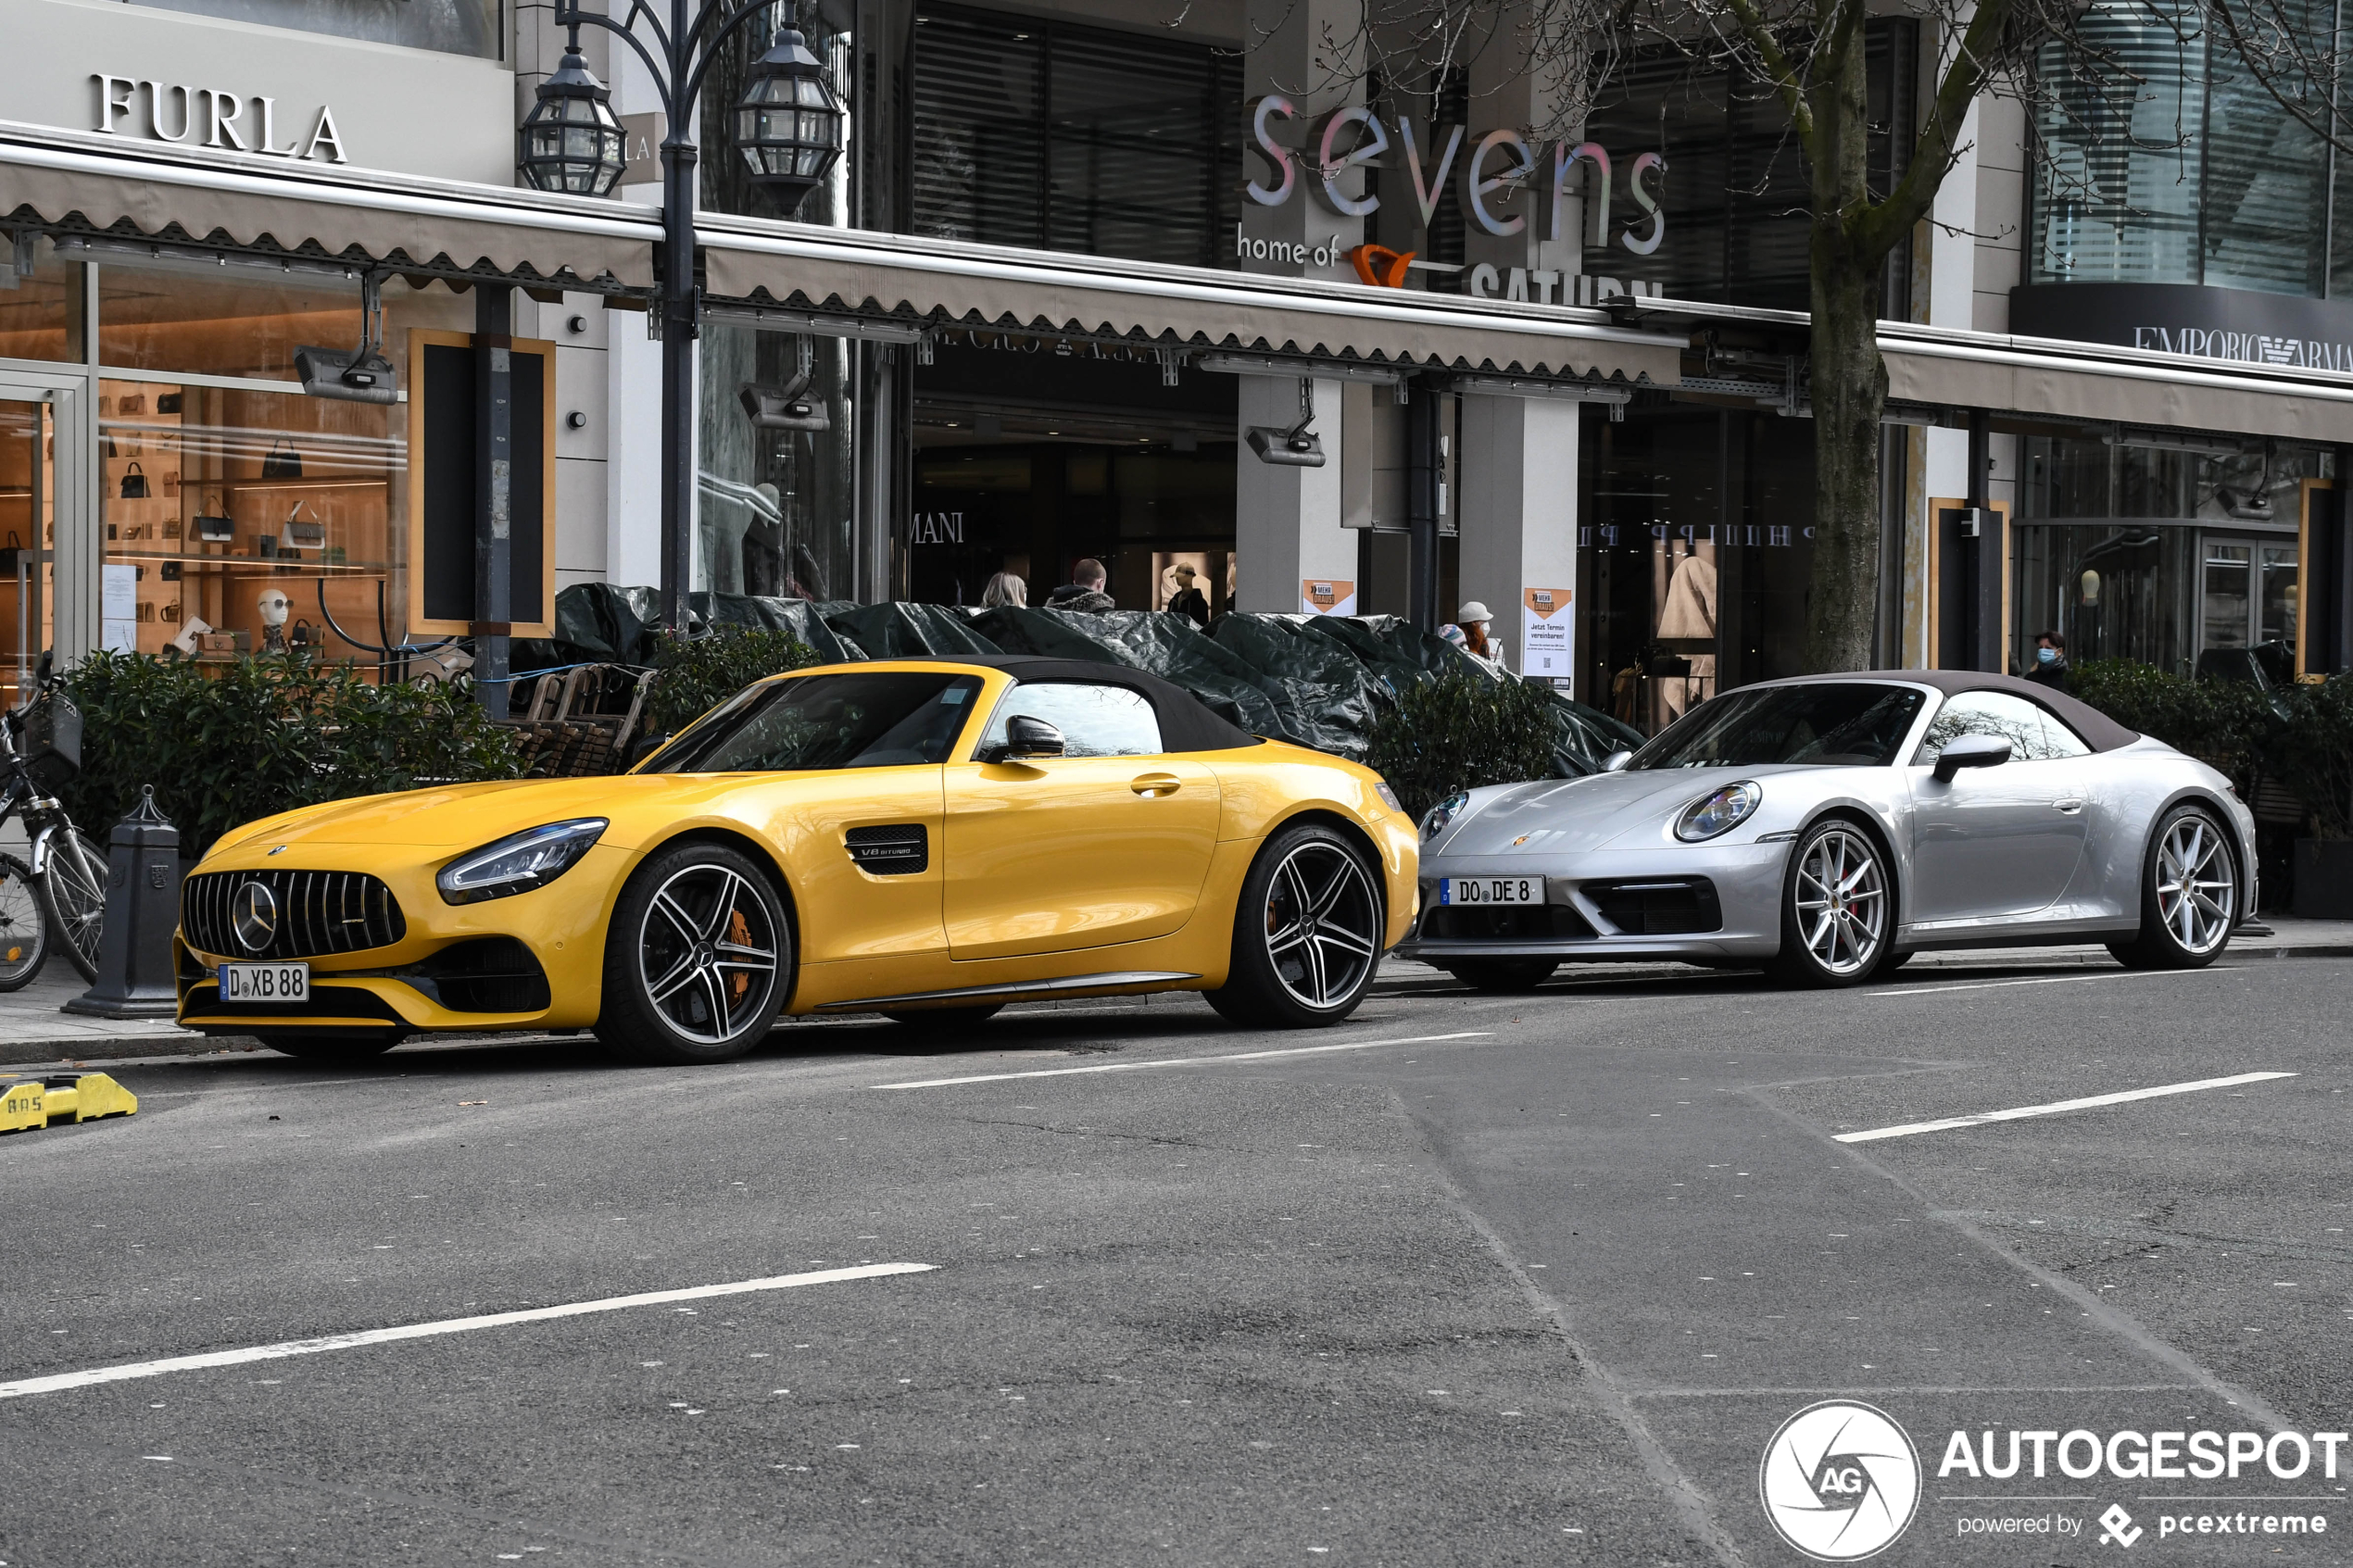 Kies jij voor de Porsche of de Mercedes-AMG?